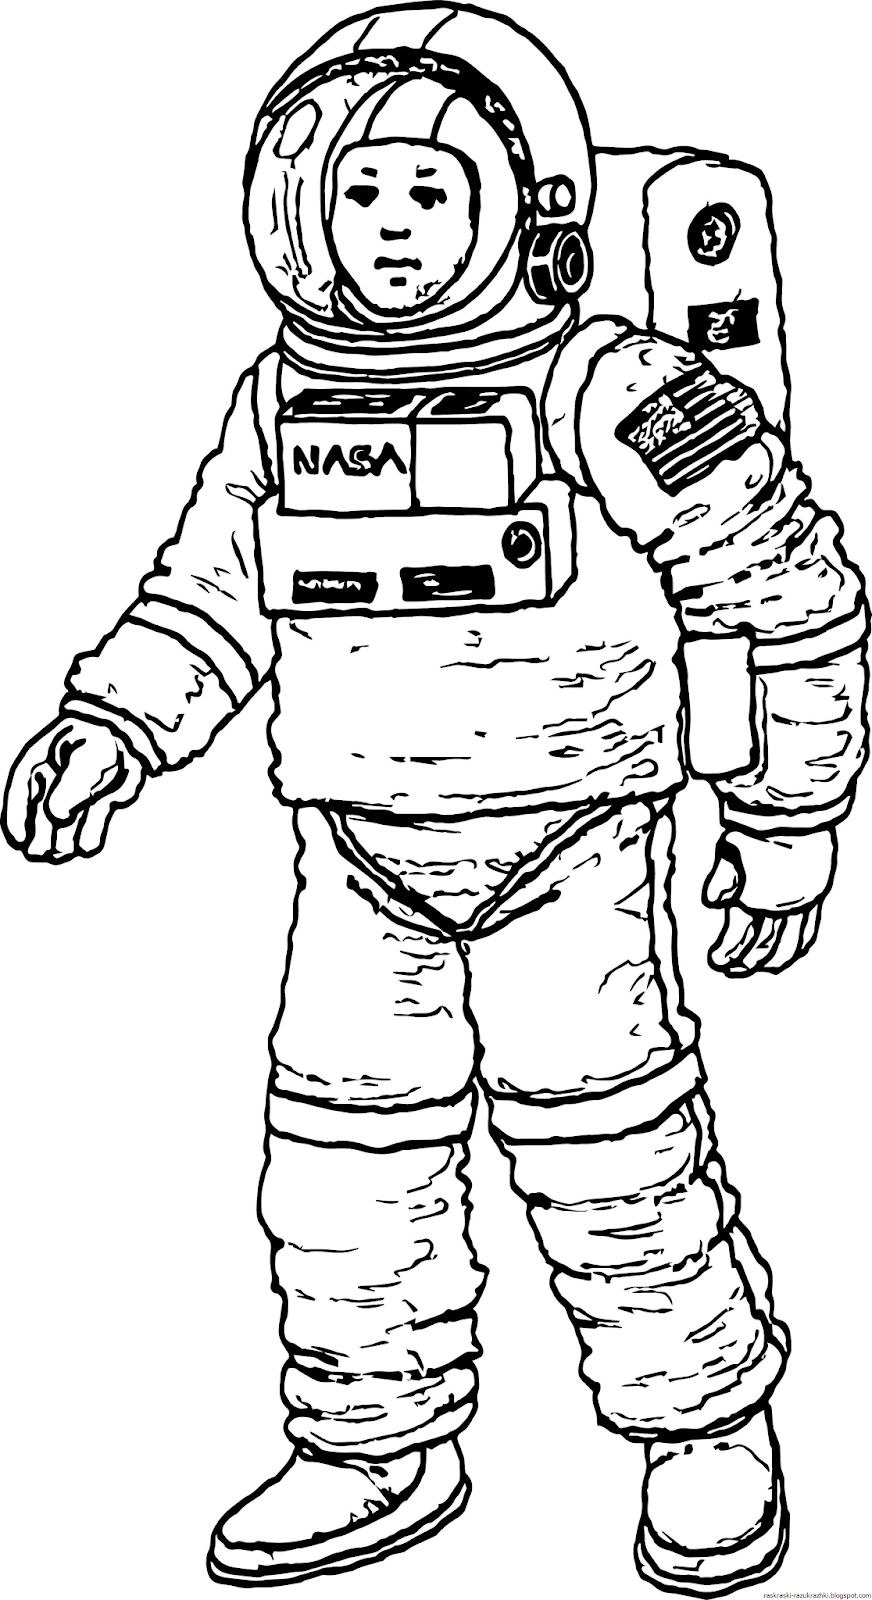 Космонавт раскраска для детей. Раскраска про космос и Космонавтов для детей. Космонавт рисунок. Рисунок Космонавта в скафандре для детей.